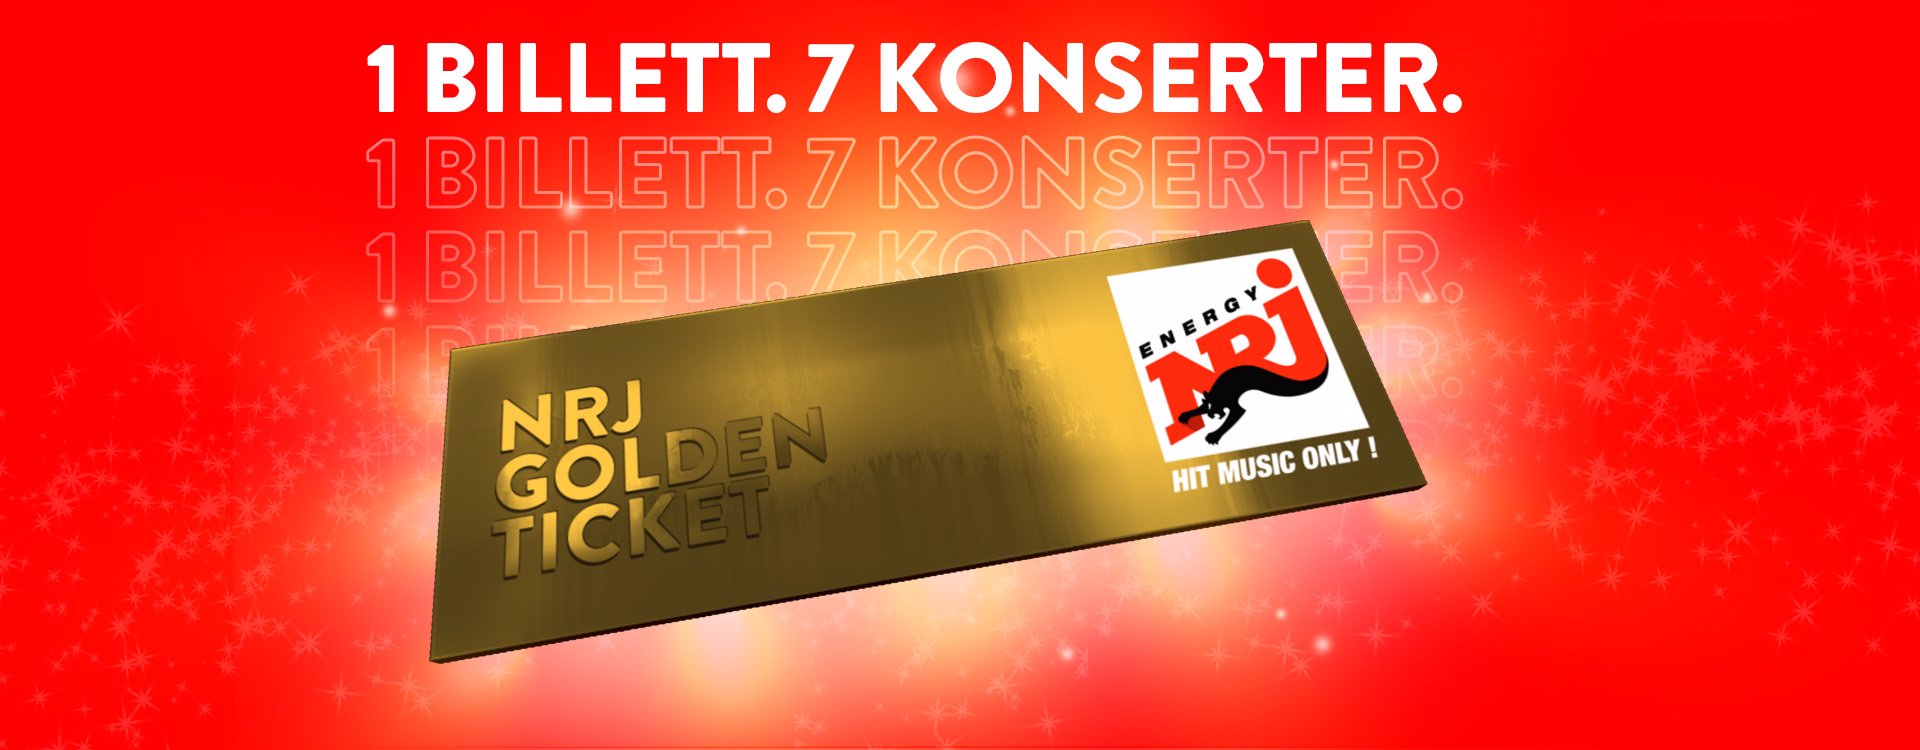 NRJ Golden Ticket sikrer deg tidenes konsertsommer!